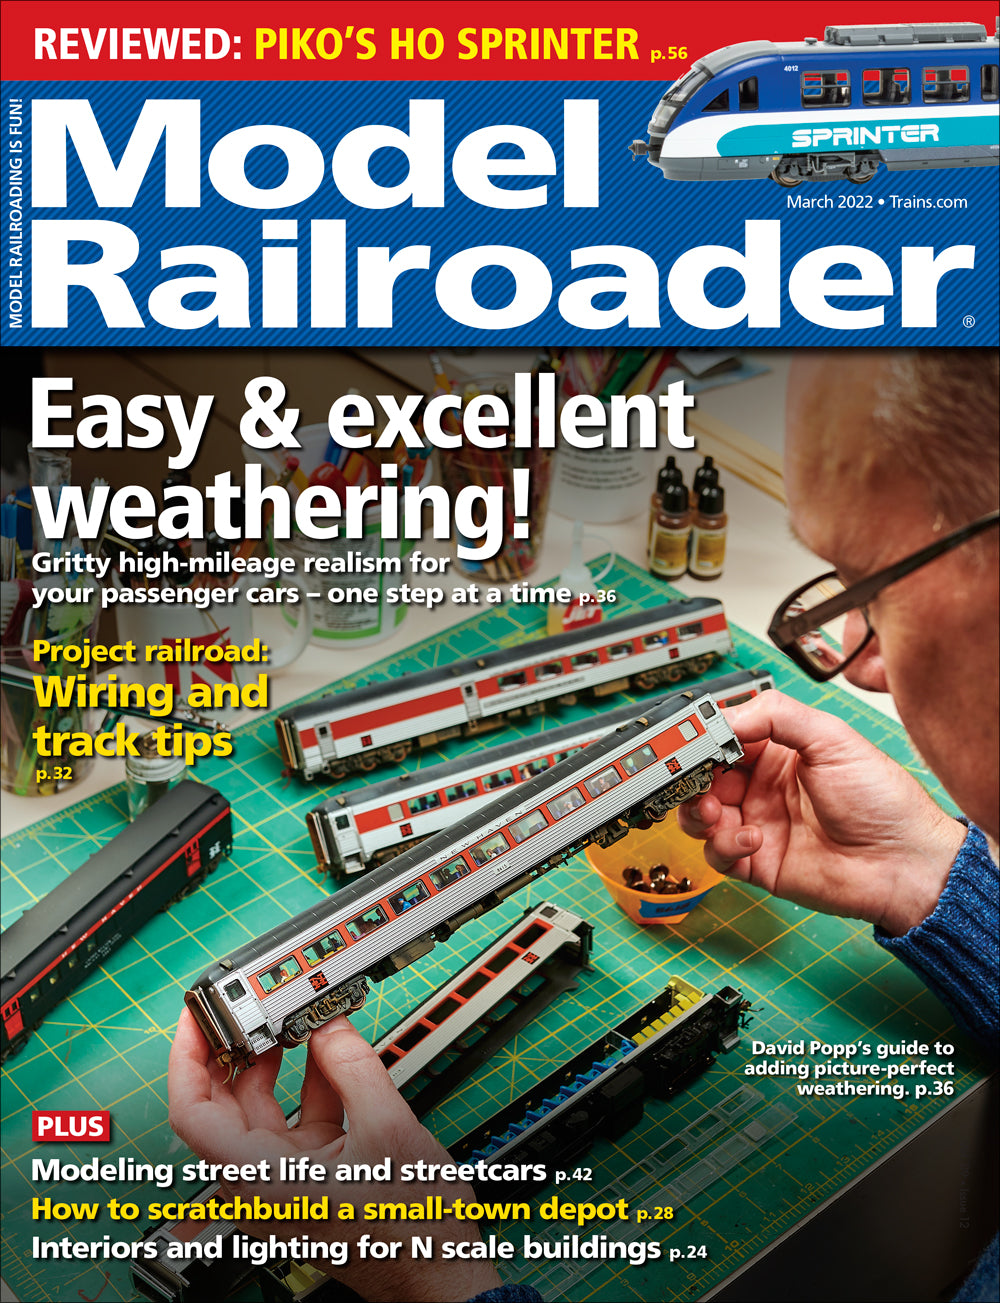 Model Railroader - Magazine - Vol. 89 - Issue 03 - March 2022